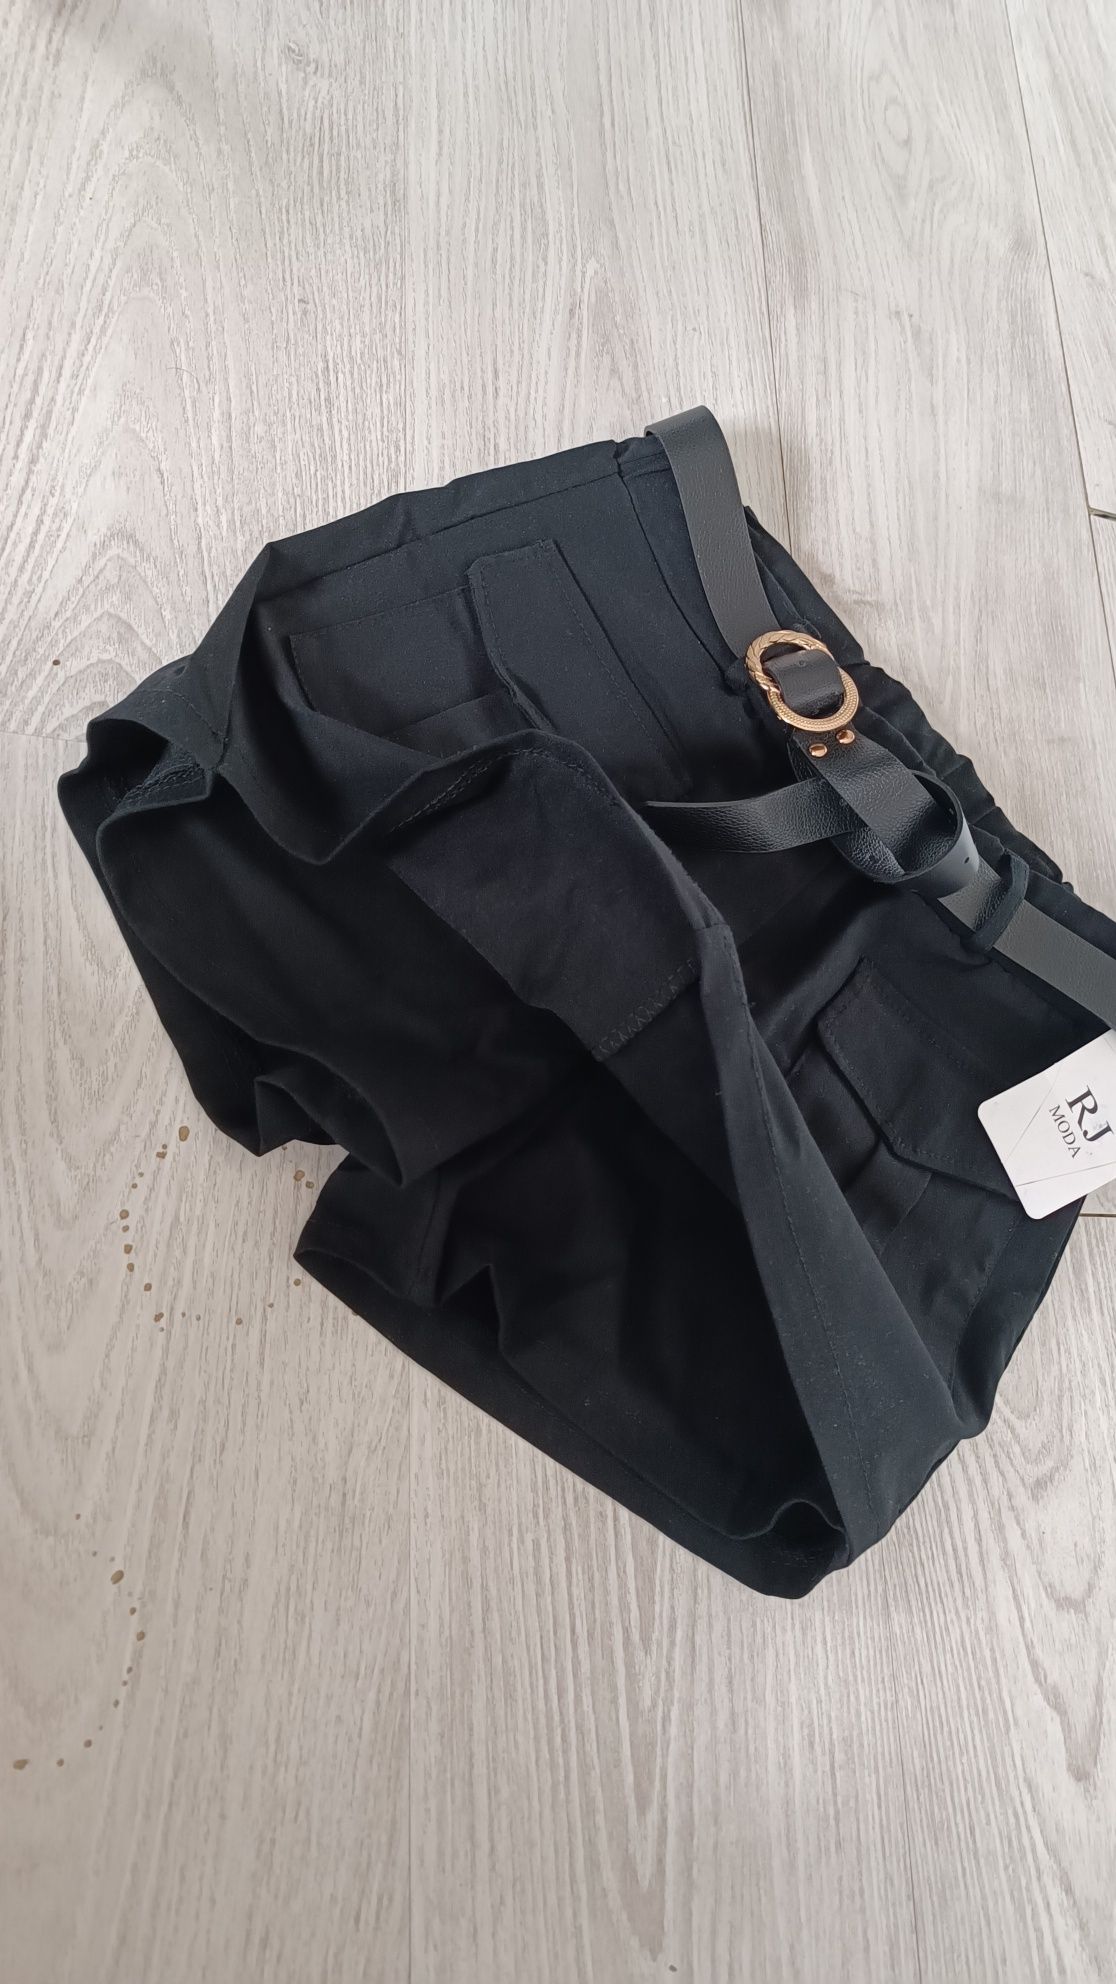 Spódnica spodnie damskie czarne rozmiar uniwersalny